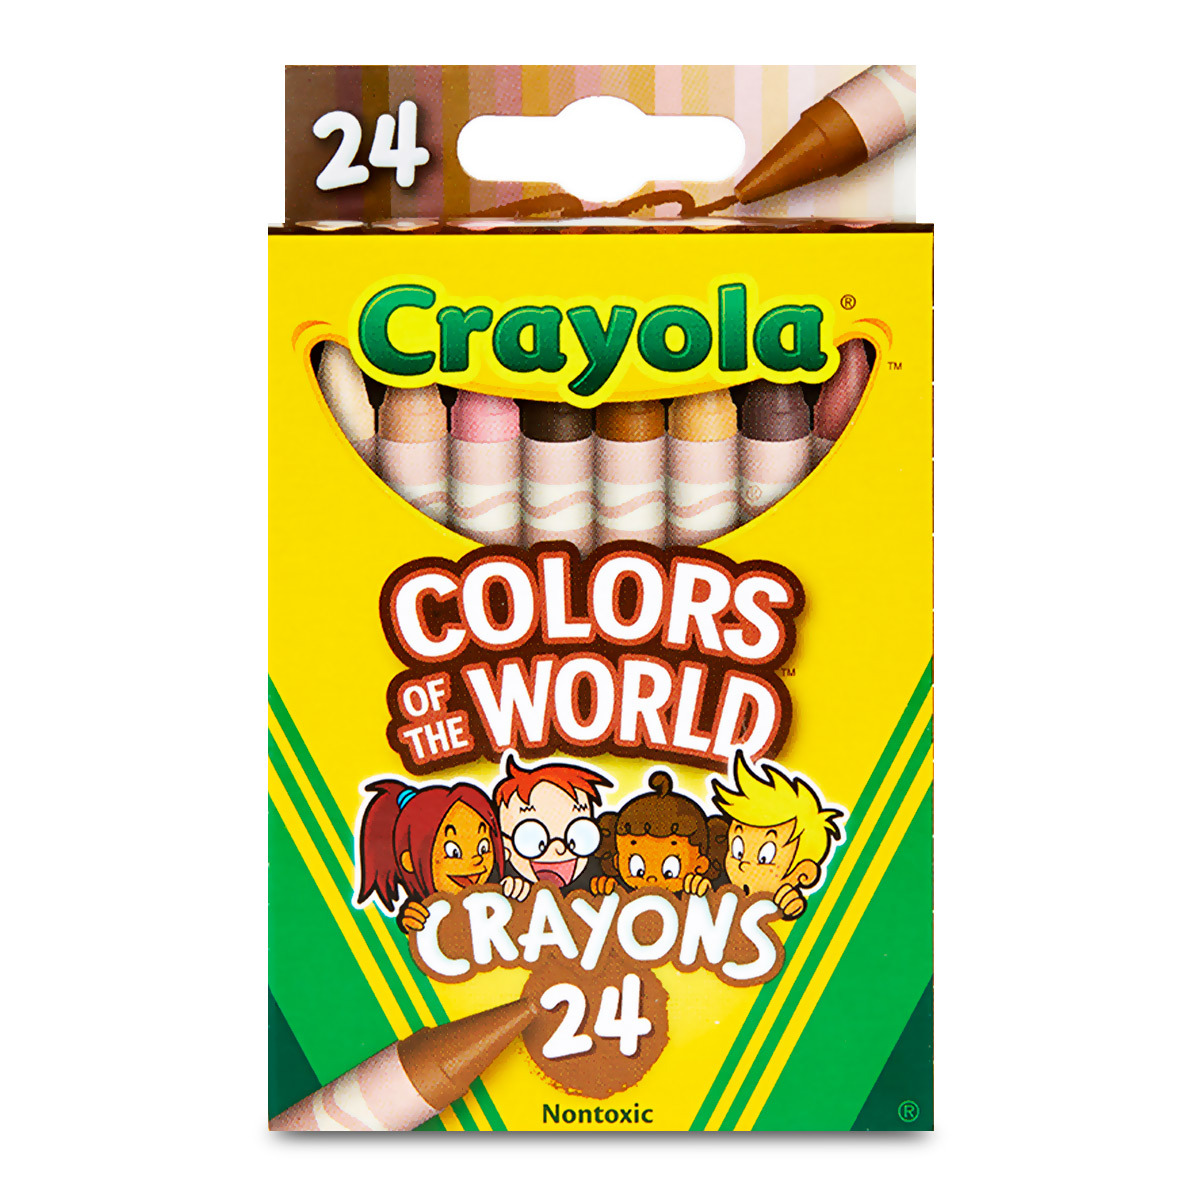 Crayones Crayola Colores del Mundo 24 piezas